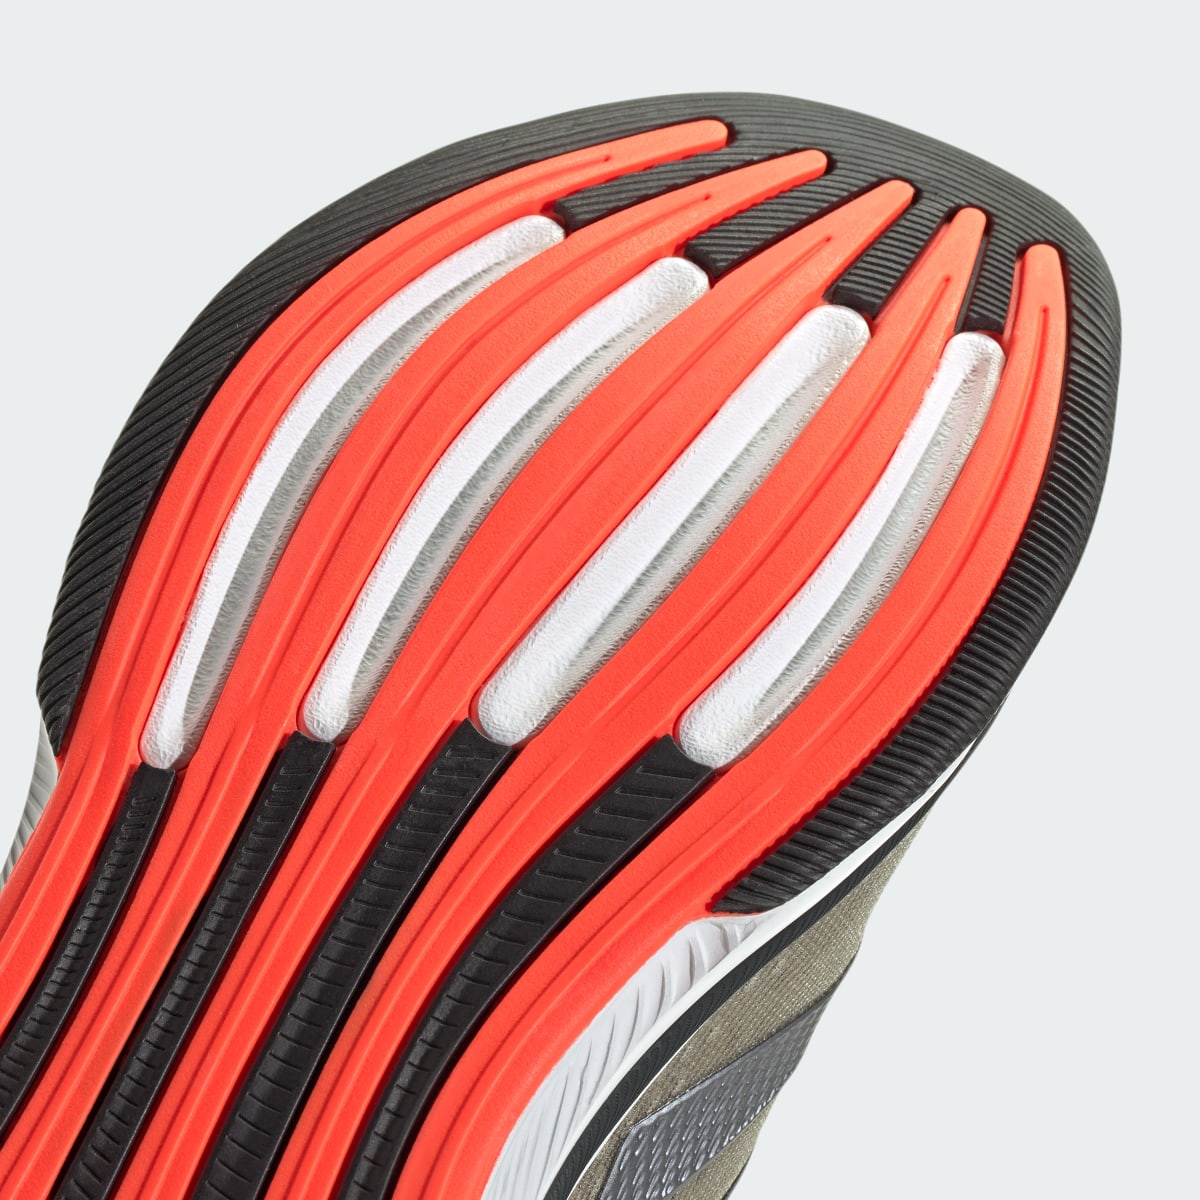 Adidas Response Super Ayakkabı. 9